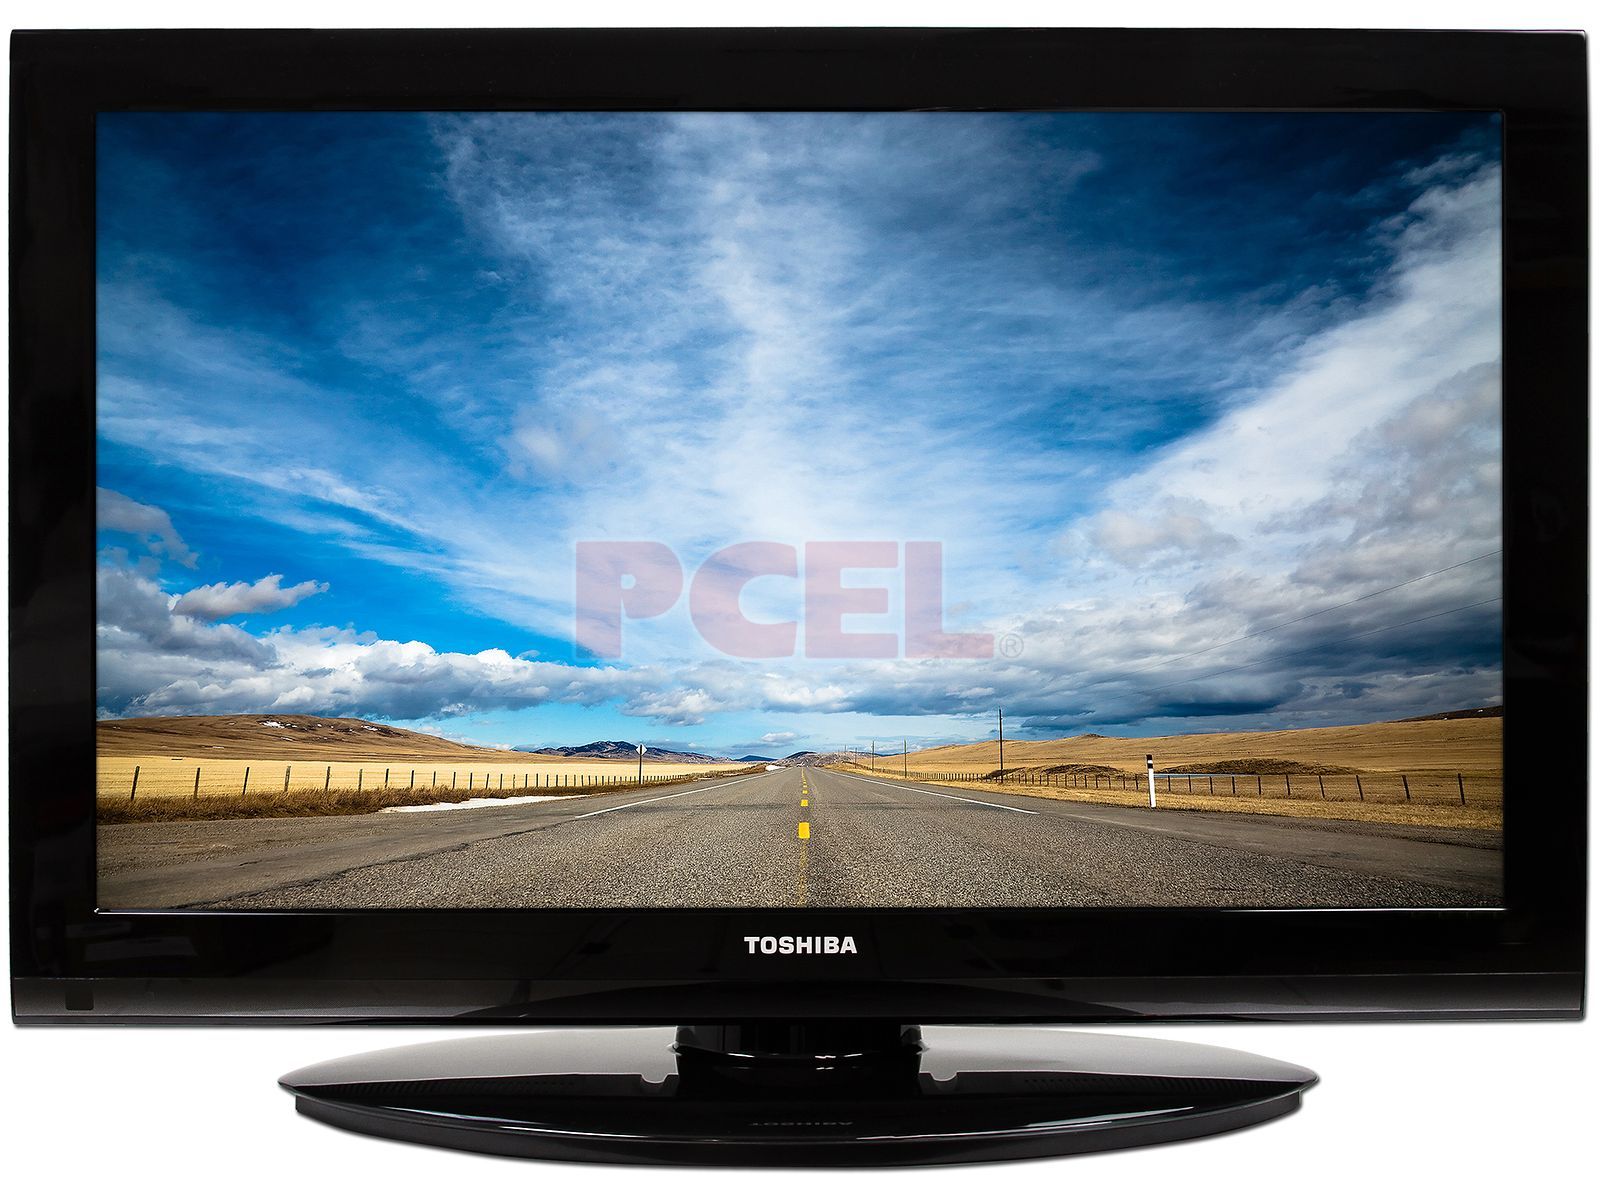 Televisión LCD Toshiba de 32 HDTV 720p.